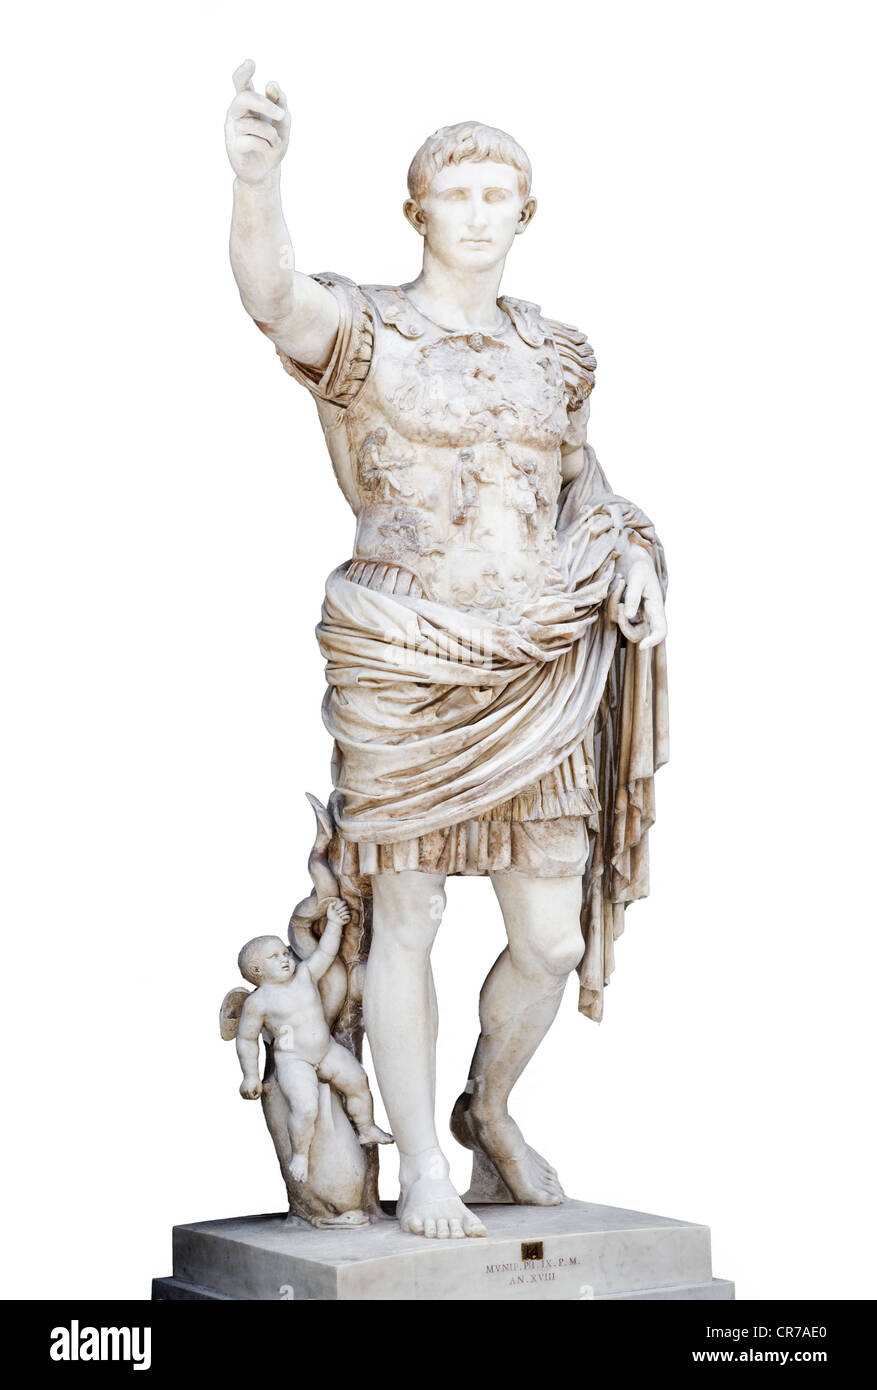 Statue de l'empereur Auguste Octave près de Prima Porta, affiché dans les Musées du Vatican, Rome (Auguste de Primaporta ) Banque D'Images